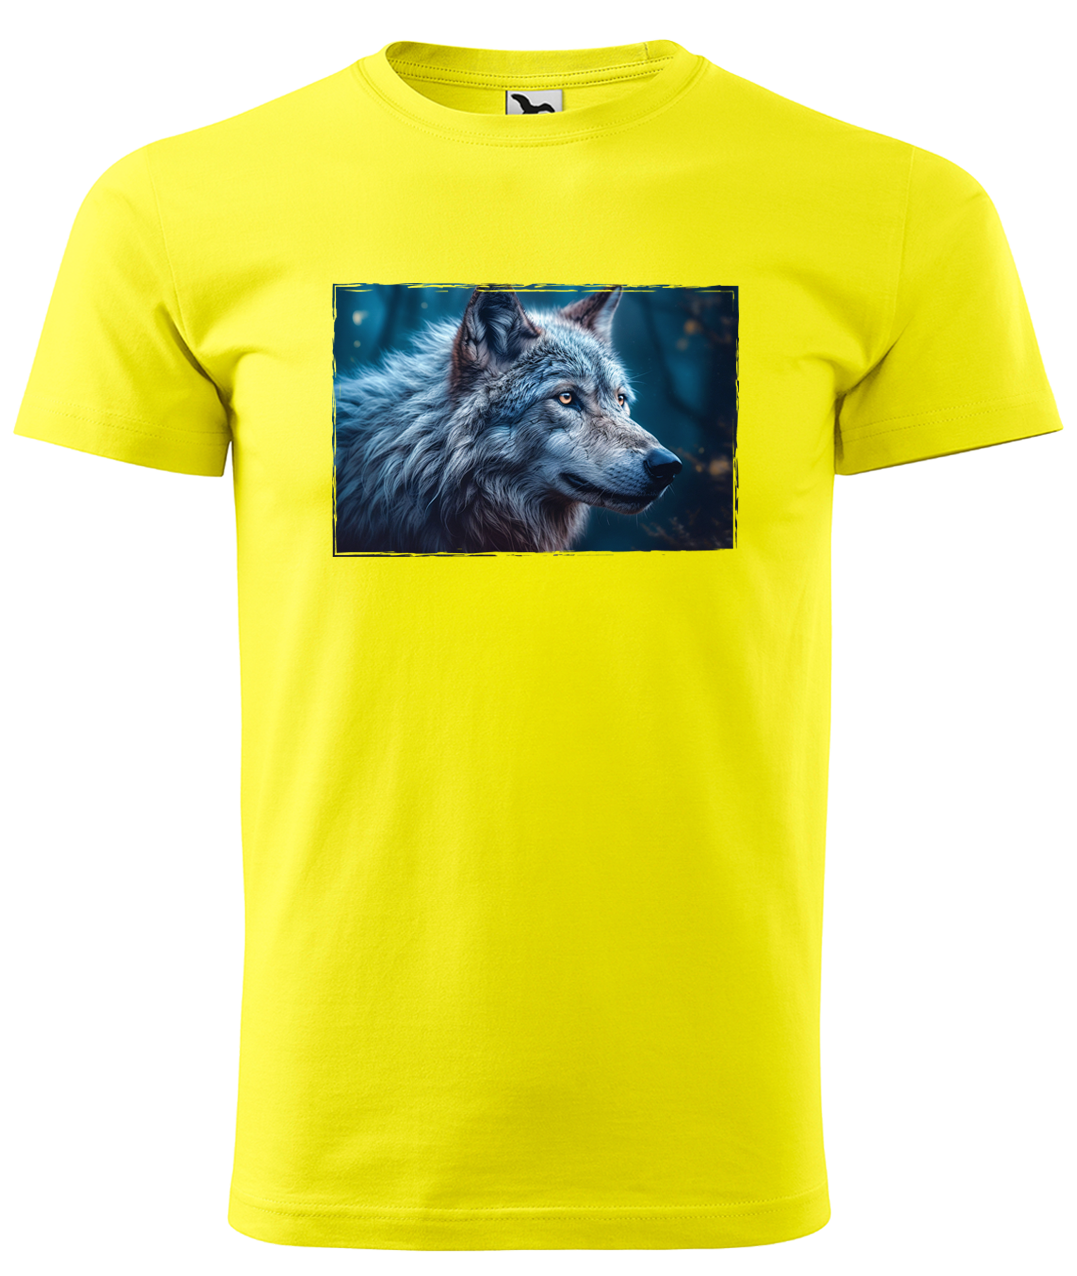 Dětské tričko s vlkem - Modrý vlk Velikost: 6 let / 122 cm, Barva: Žlutá (04)